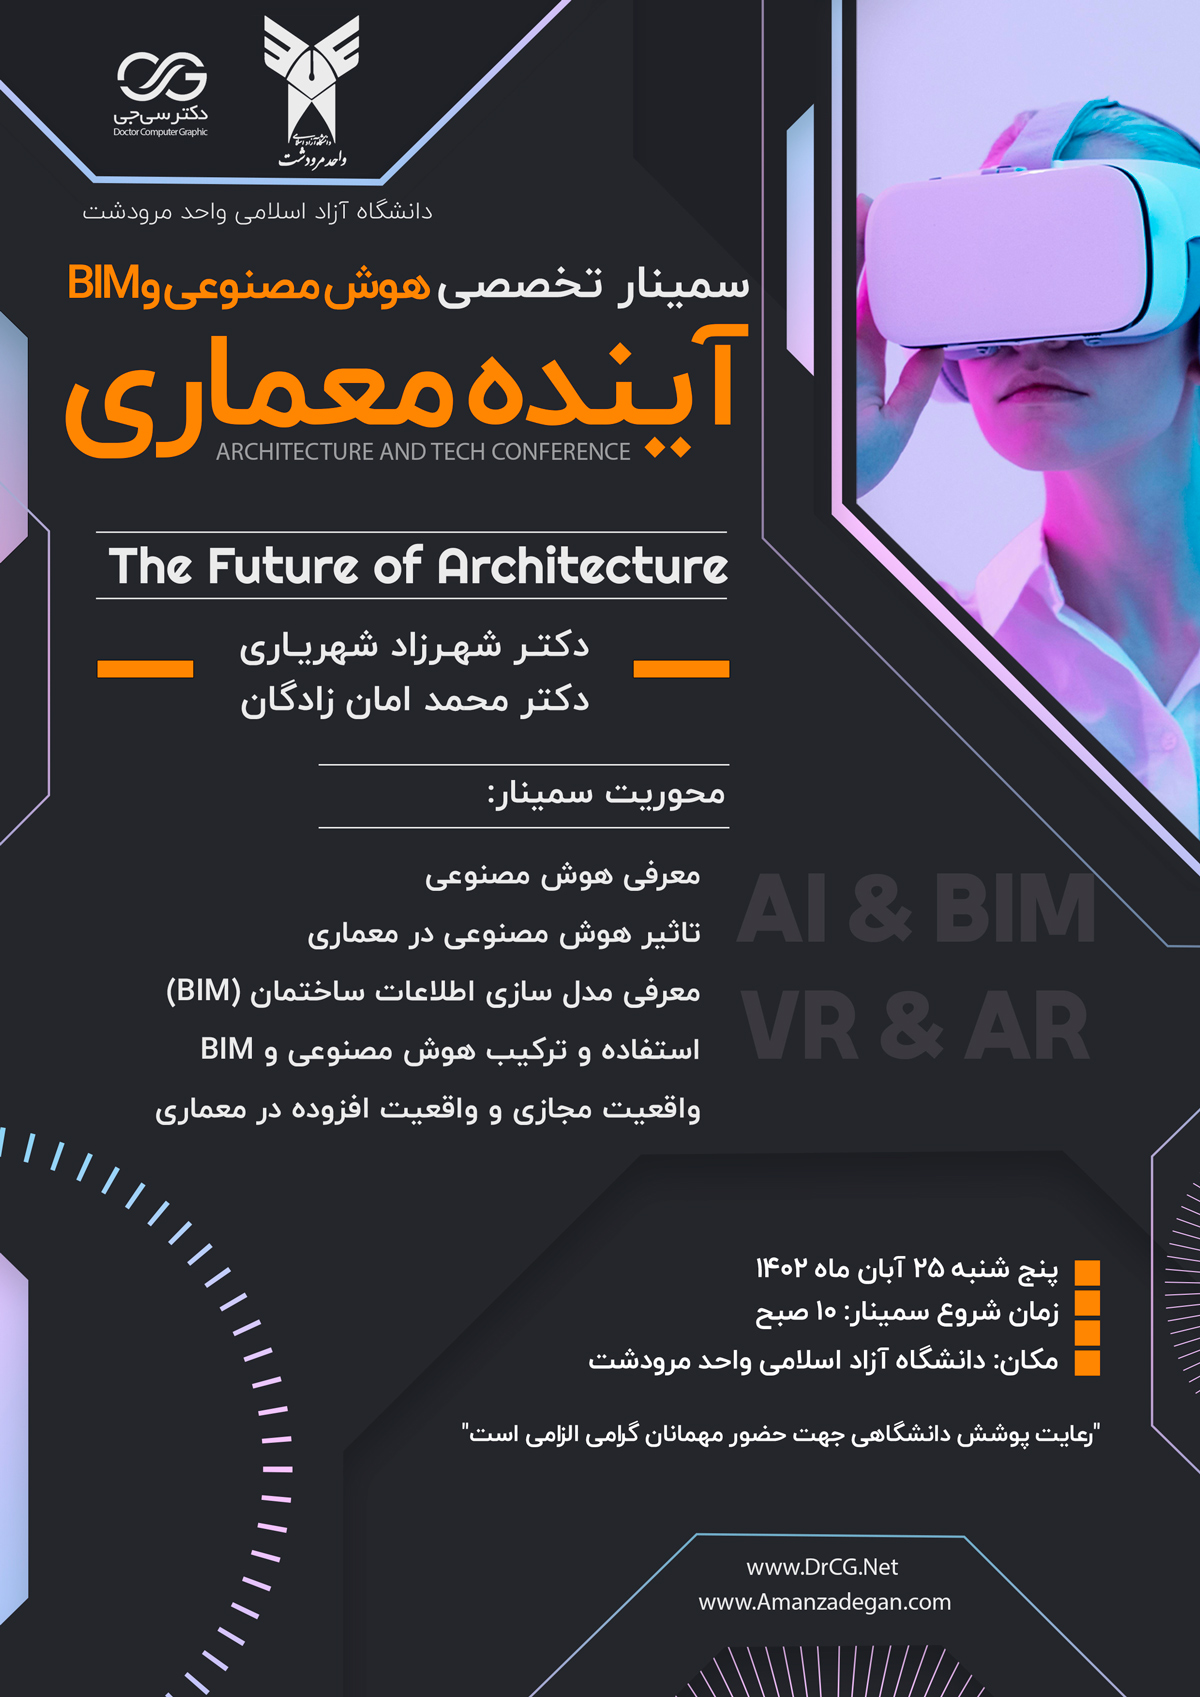 آینده معماری با هوش مصنوعی و BIM و AR , VR